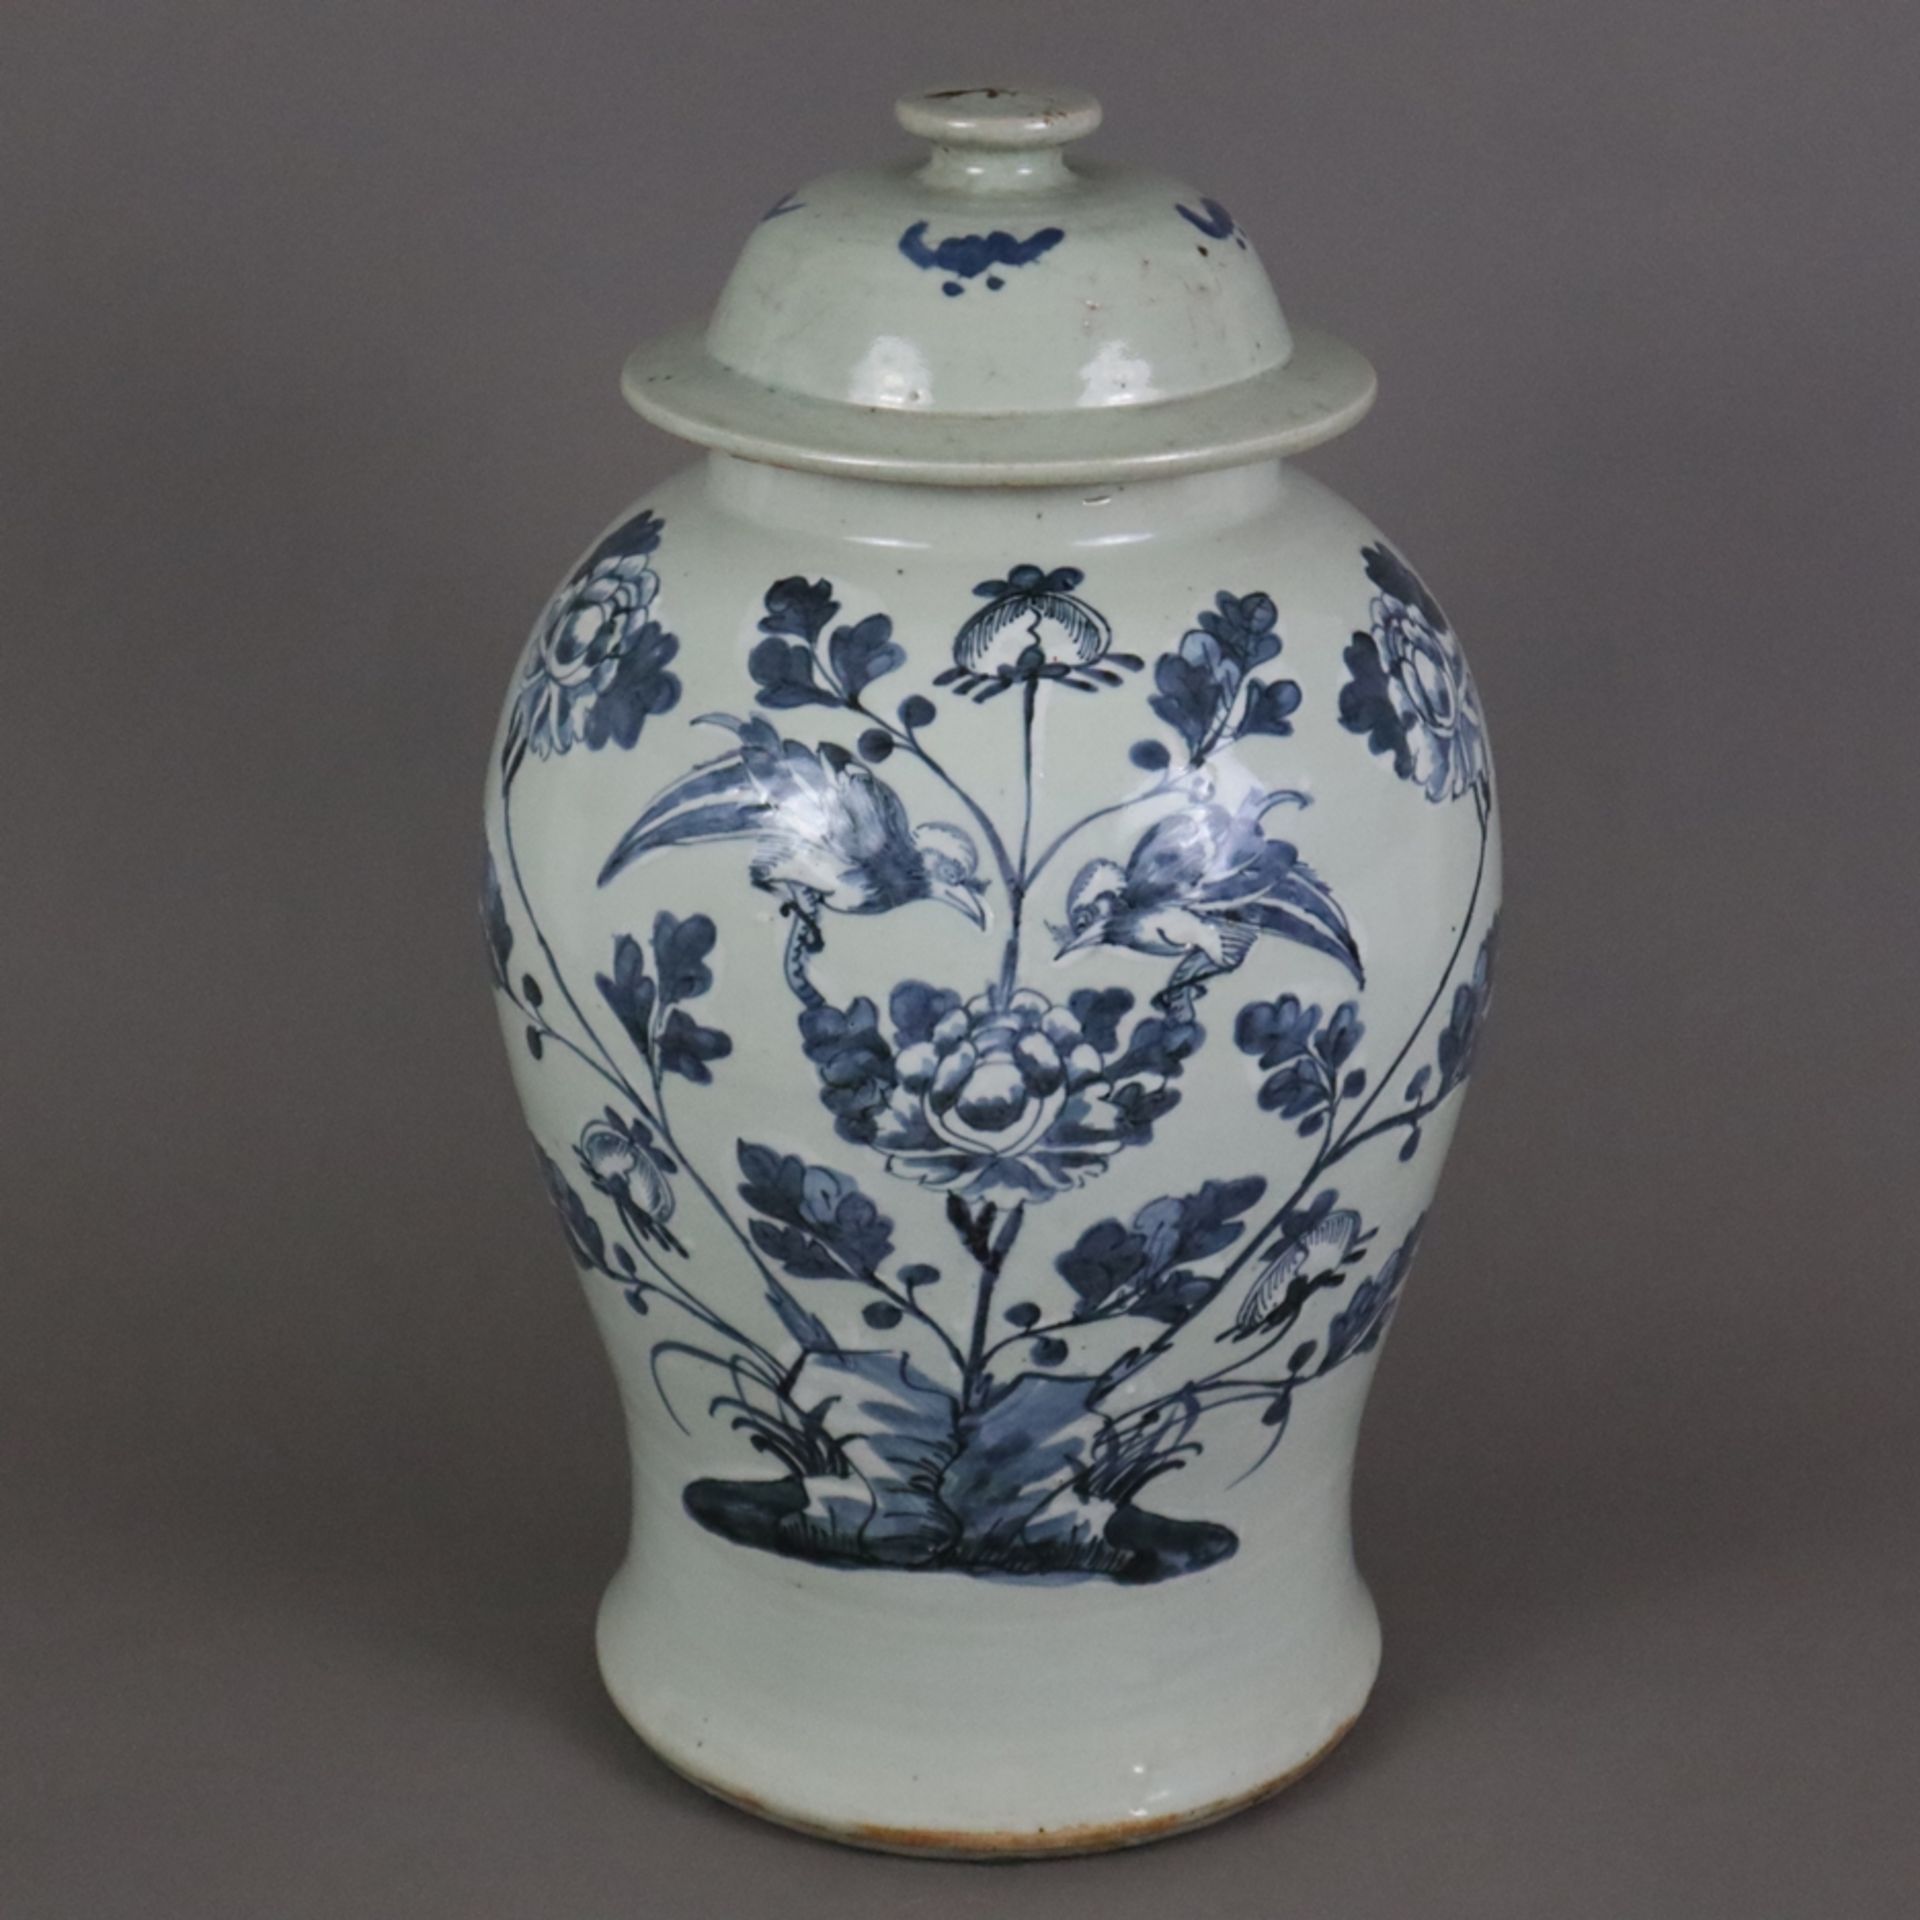 Schultervase mit Deckel - China um 1900, Porzellan, sehr helle Seladonglasur, schauseitig Floralmot